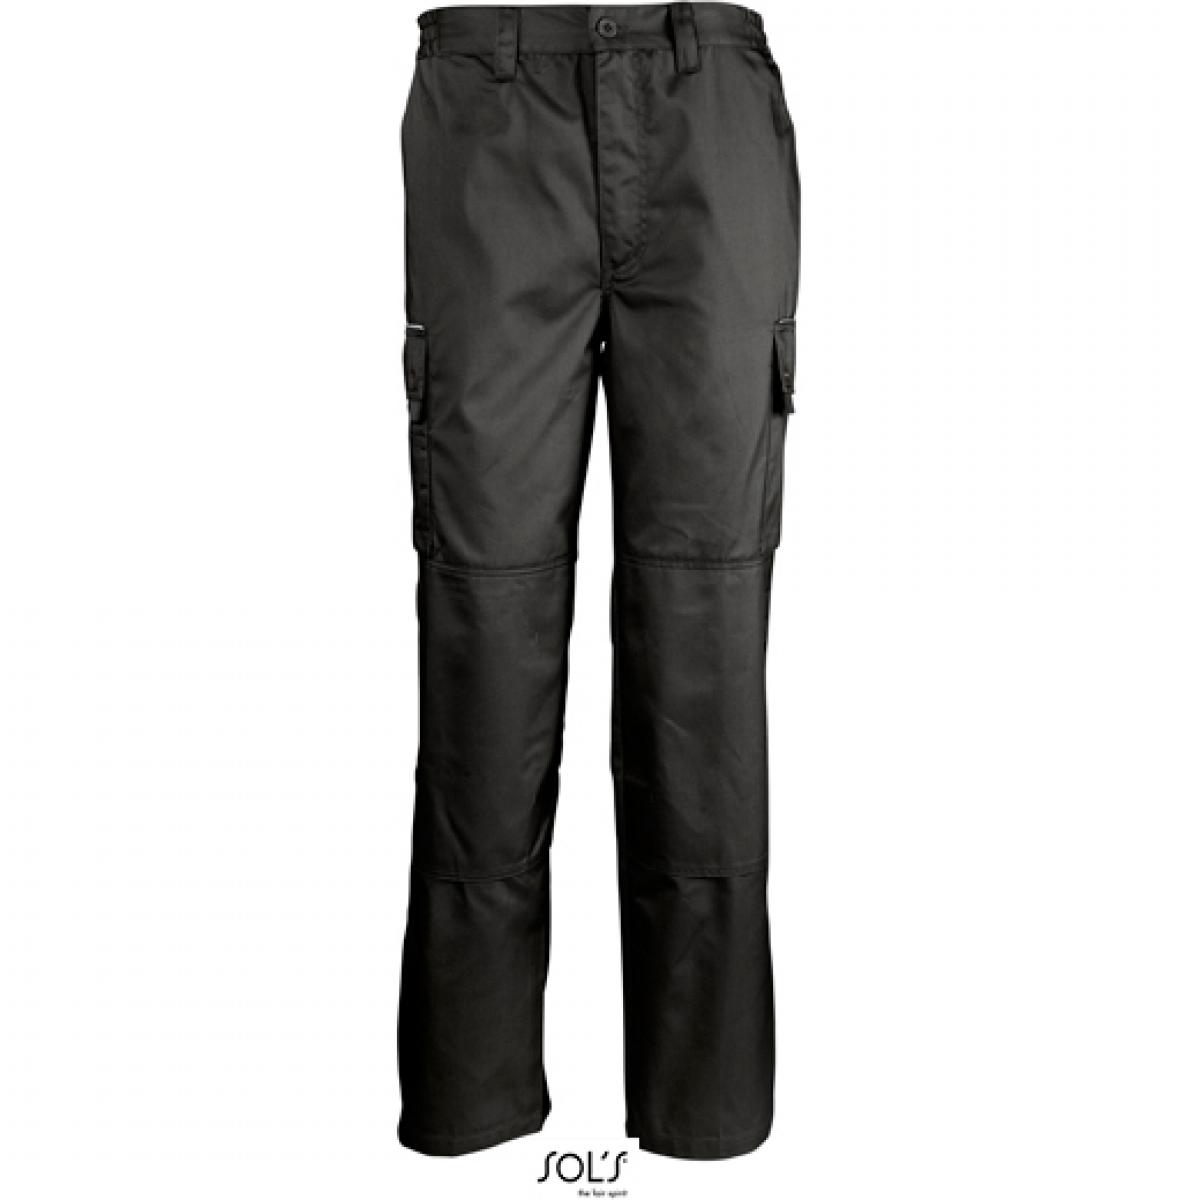 Hersteller: SOLs ProWear Herstellernummer: 80600 Artikelbezeichnung: Herren Workwear Trousers Active Pro / Waschbar bis 60 °C Farbe: Black